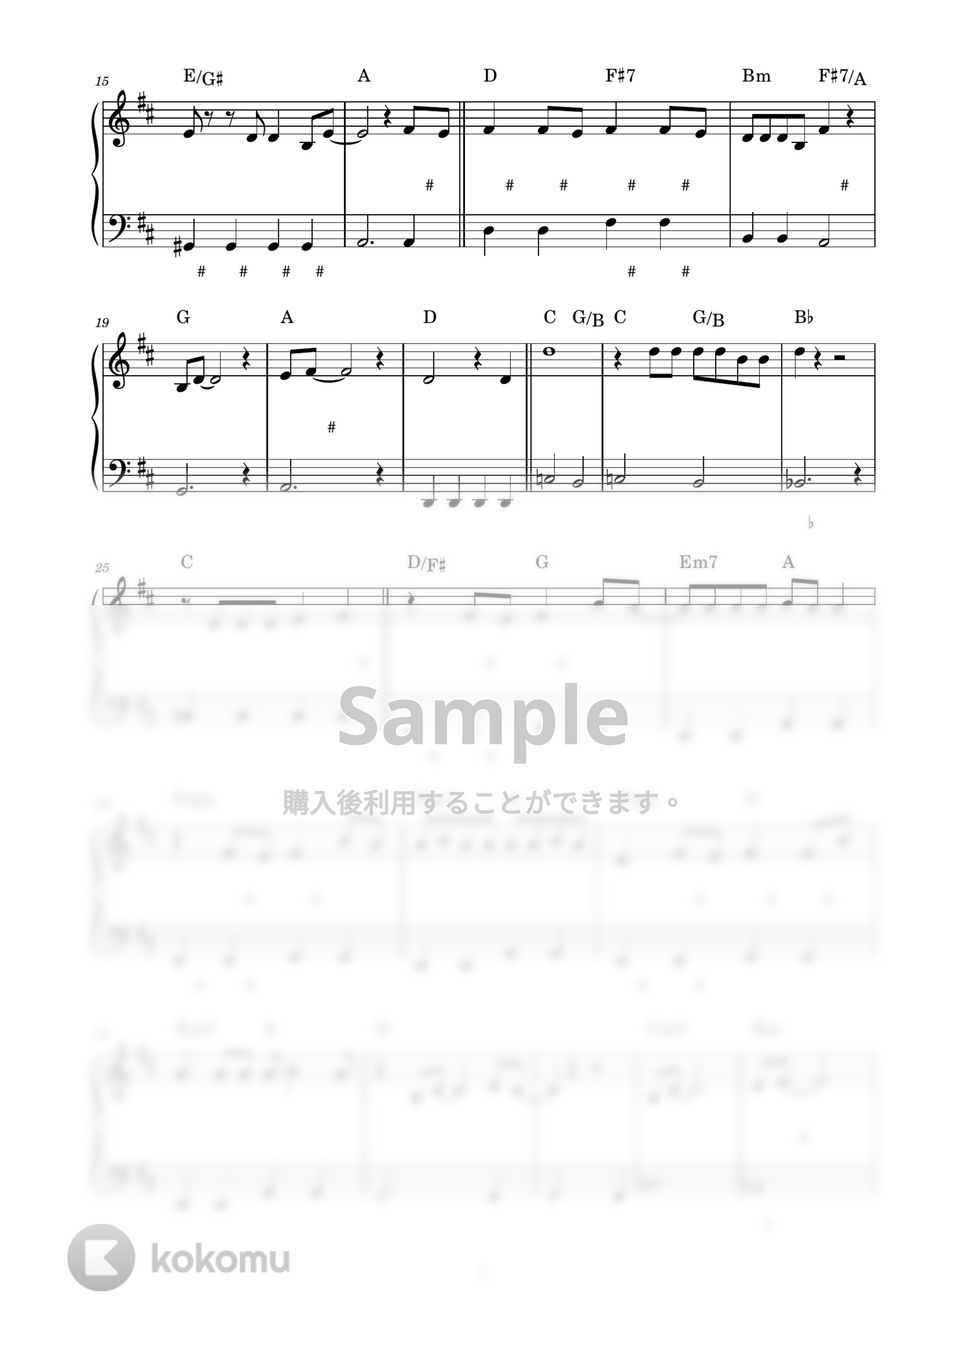 ハチワレ(CV:田中 誠人) - ひとりごつ～バンドver. (ピアノ楽譜 / かんたん両手 / 歌詞付き / ドレミ付き / 初心者向き) by piano.tokyo